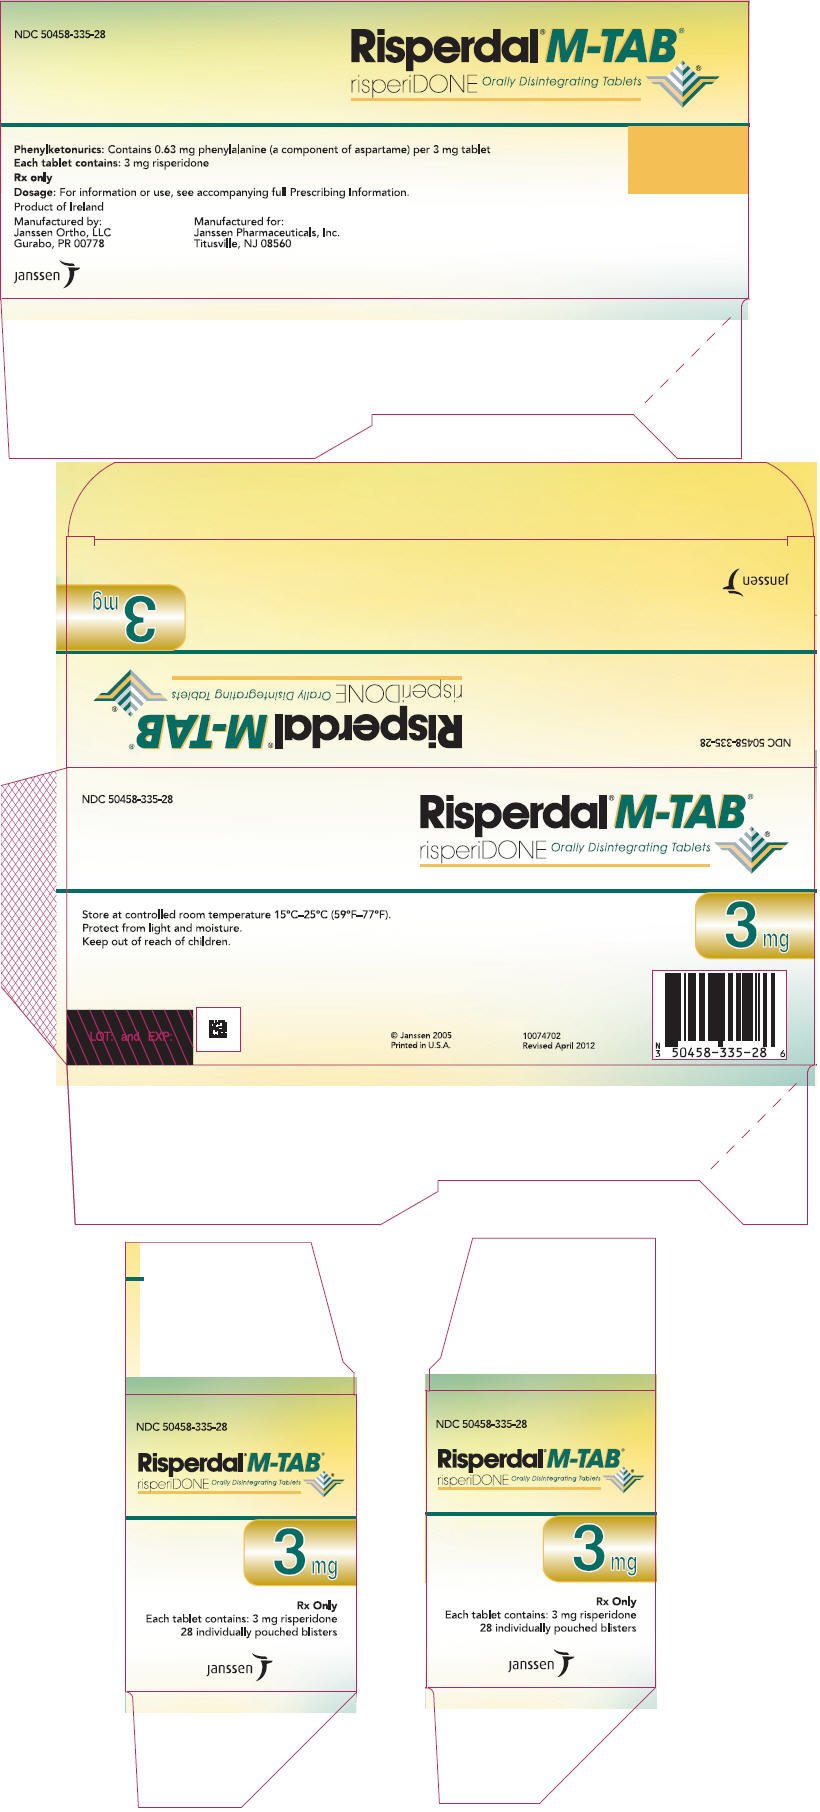 PRINCIPAL DISPLAY PANEL - 3 mg Tablet Carton